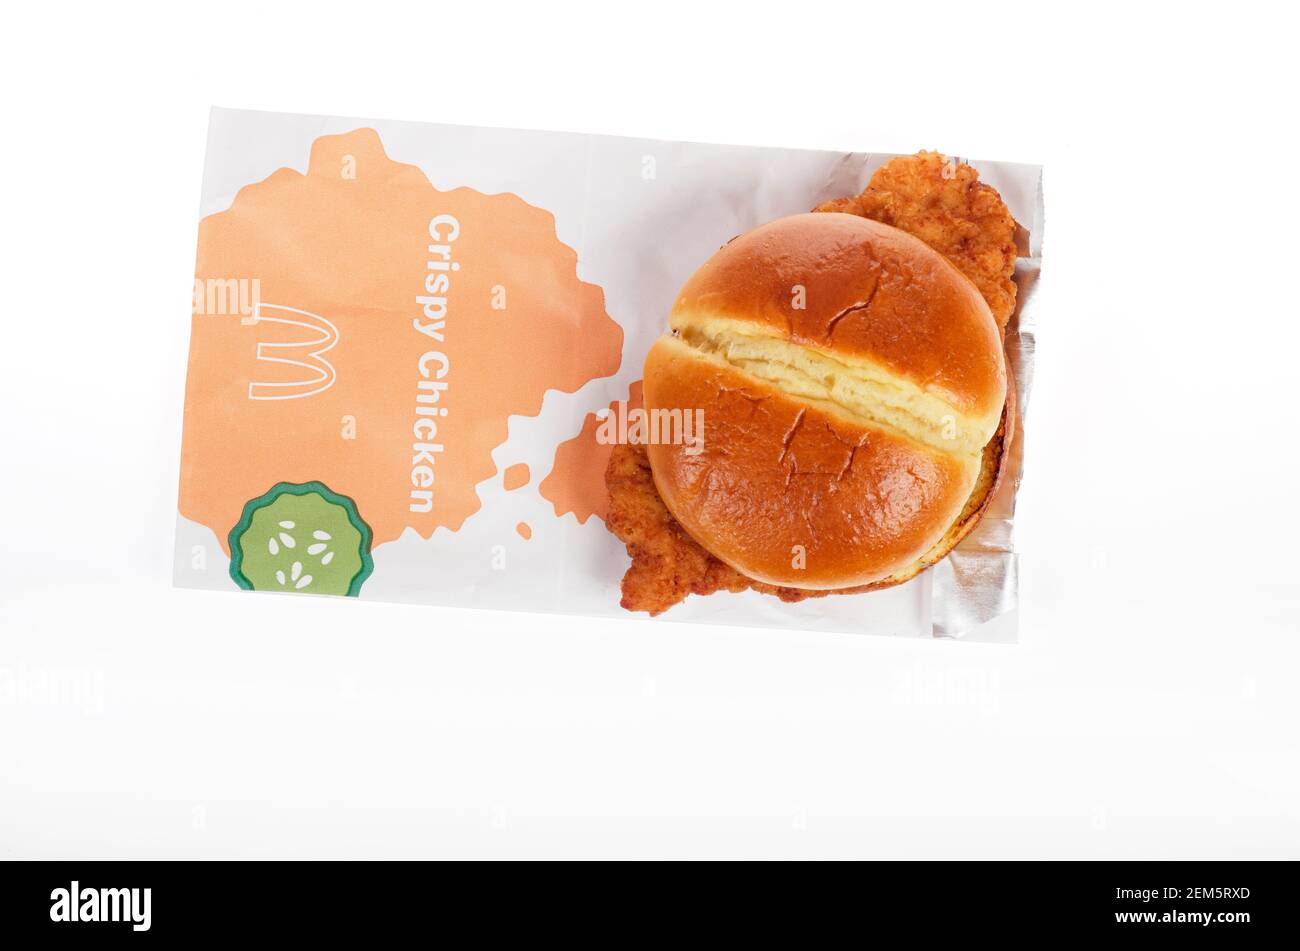 McDonalds nouveau sandwich et sac de poulet croustillant sorti le 24 février 2021 aux États-Unis Banque D'Images